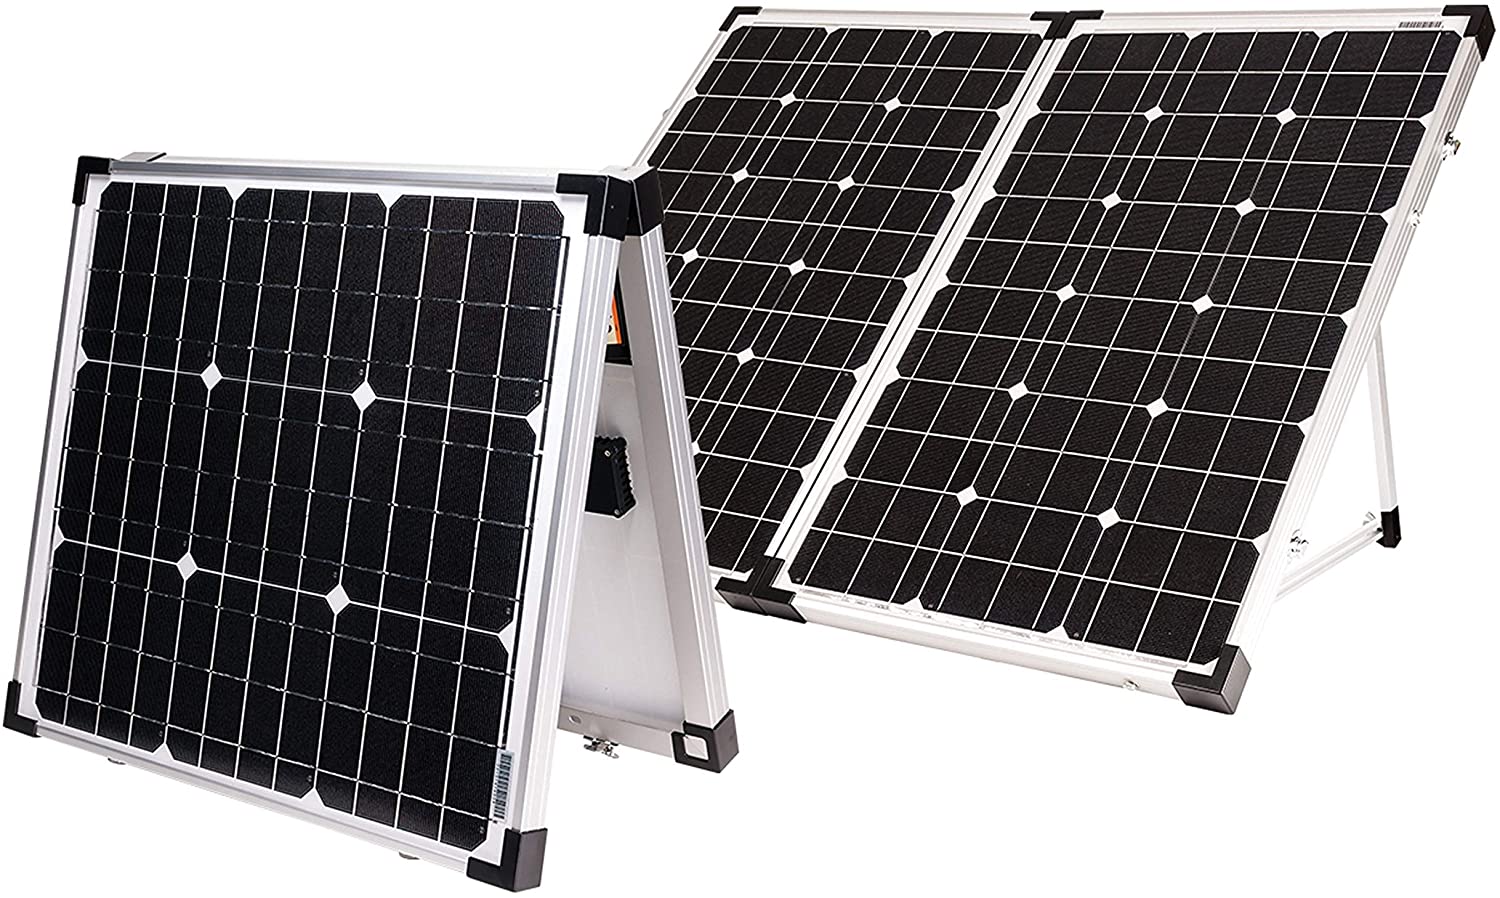 Panel solar para vehiculos camper – Camper León